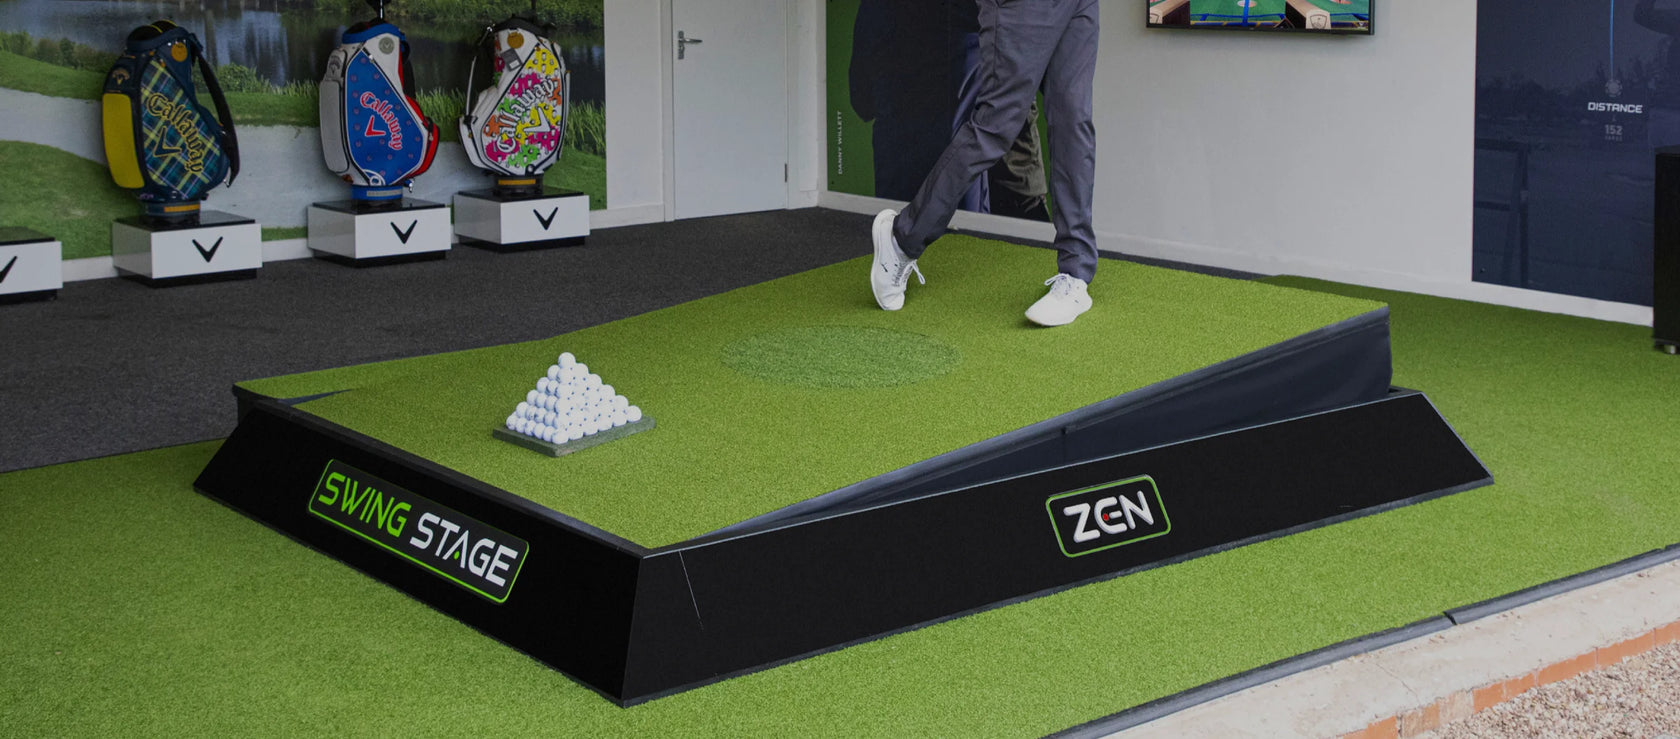 Zen Swing Stage | MIA Golf Technology